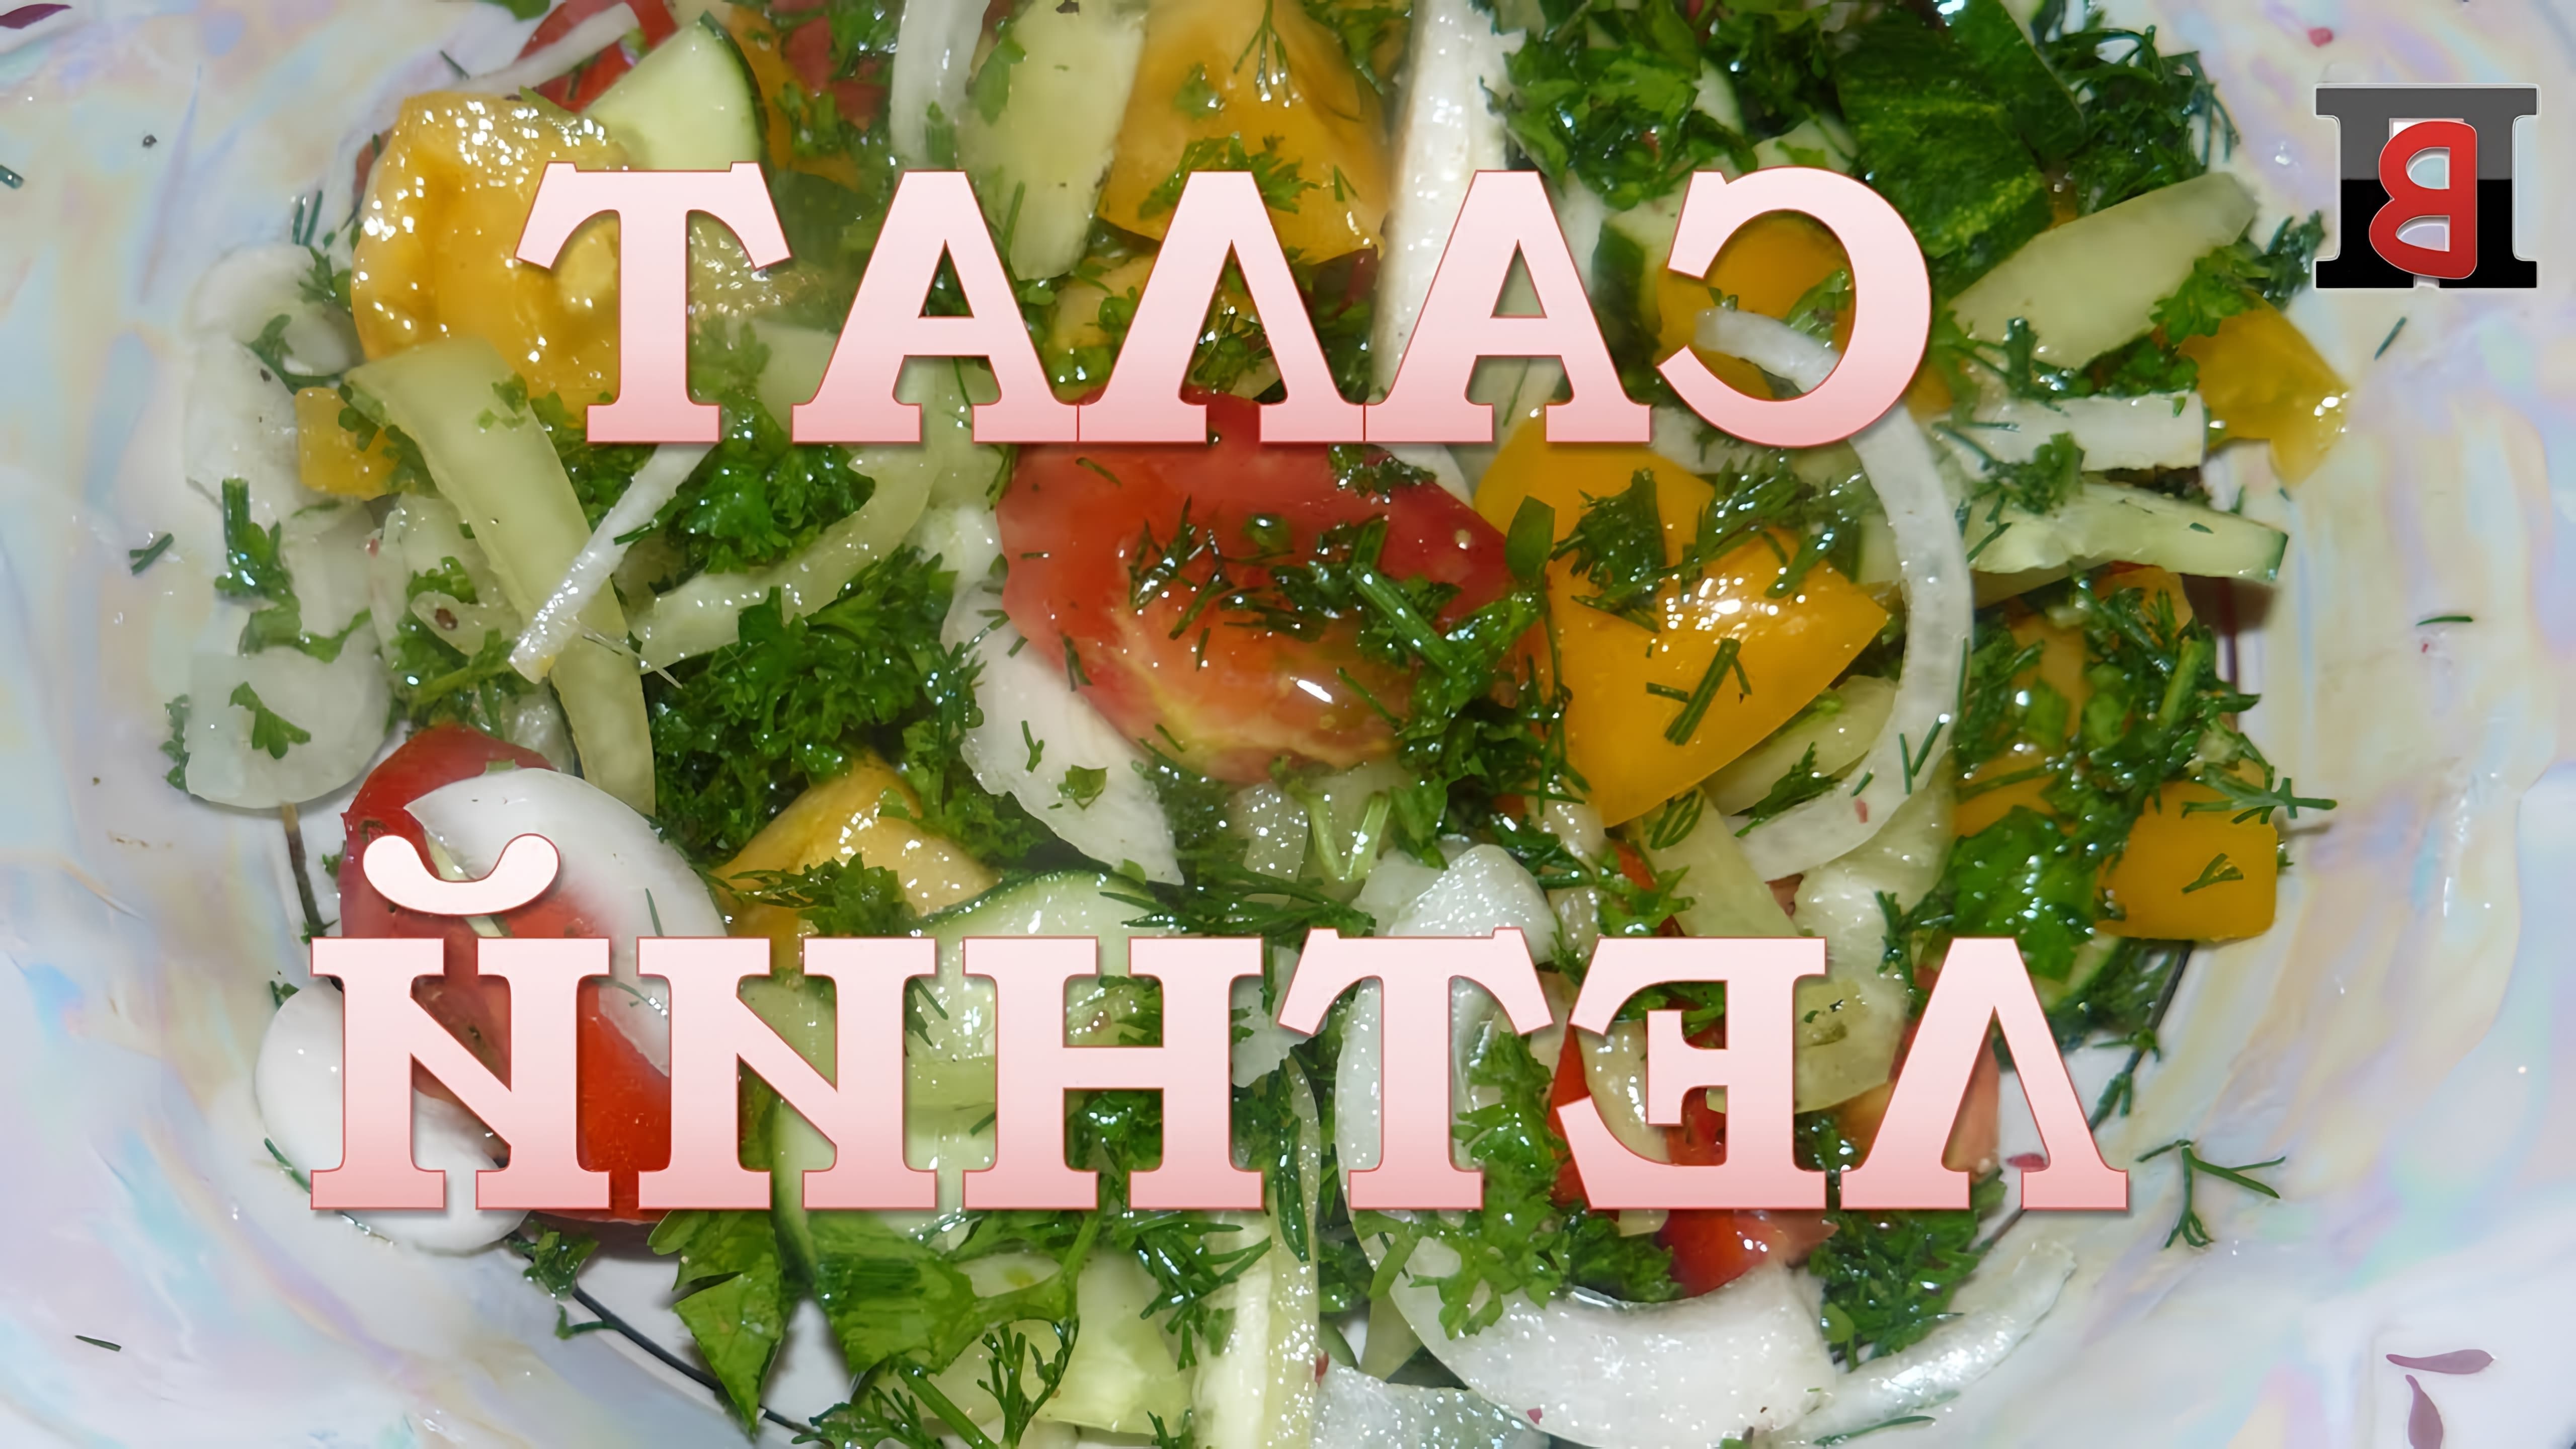 В этом видео представлен рецепт приготовления летнего салата, который является универсальным и может быть заправлен различными ингредиентами